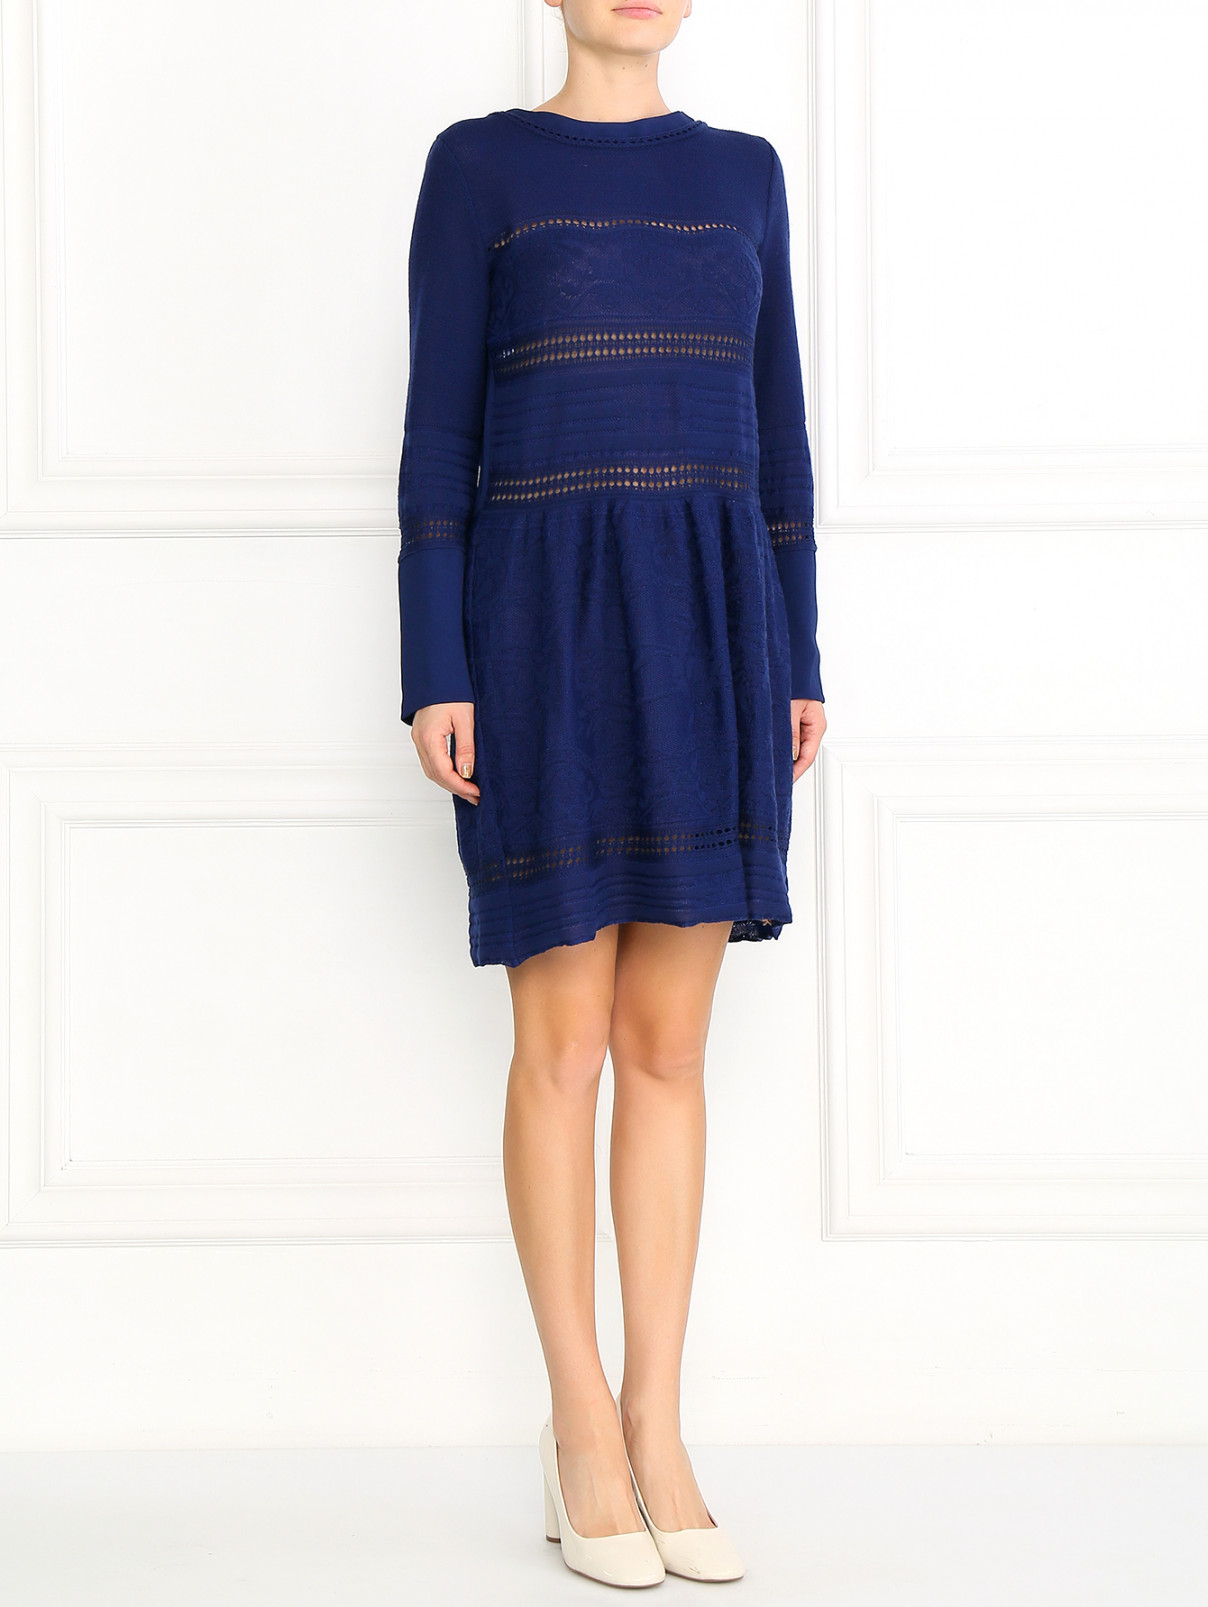 Платье из шерсти с кружевным узором Alberta Ferretti  –  Модель Общий вид  – Цвет:  Синий